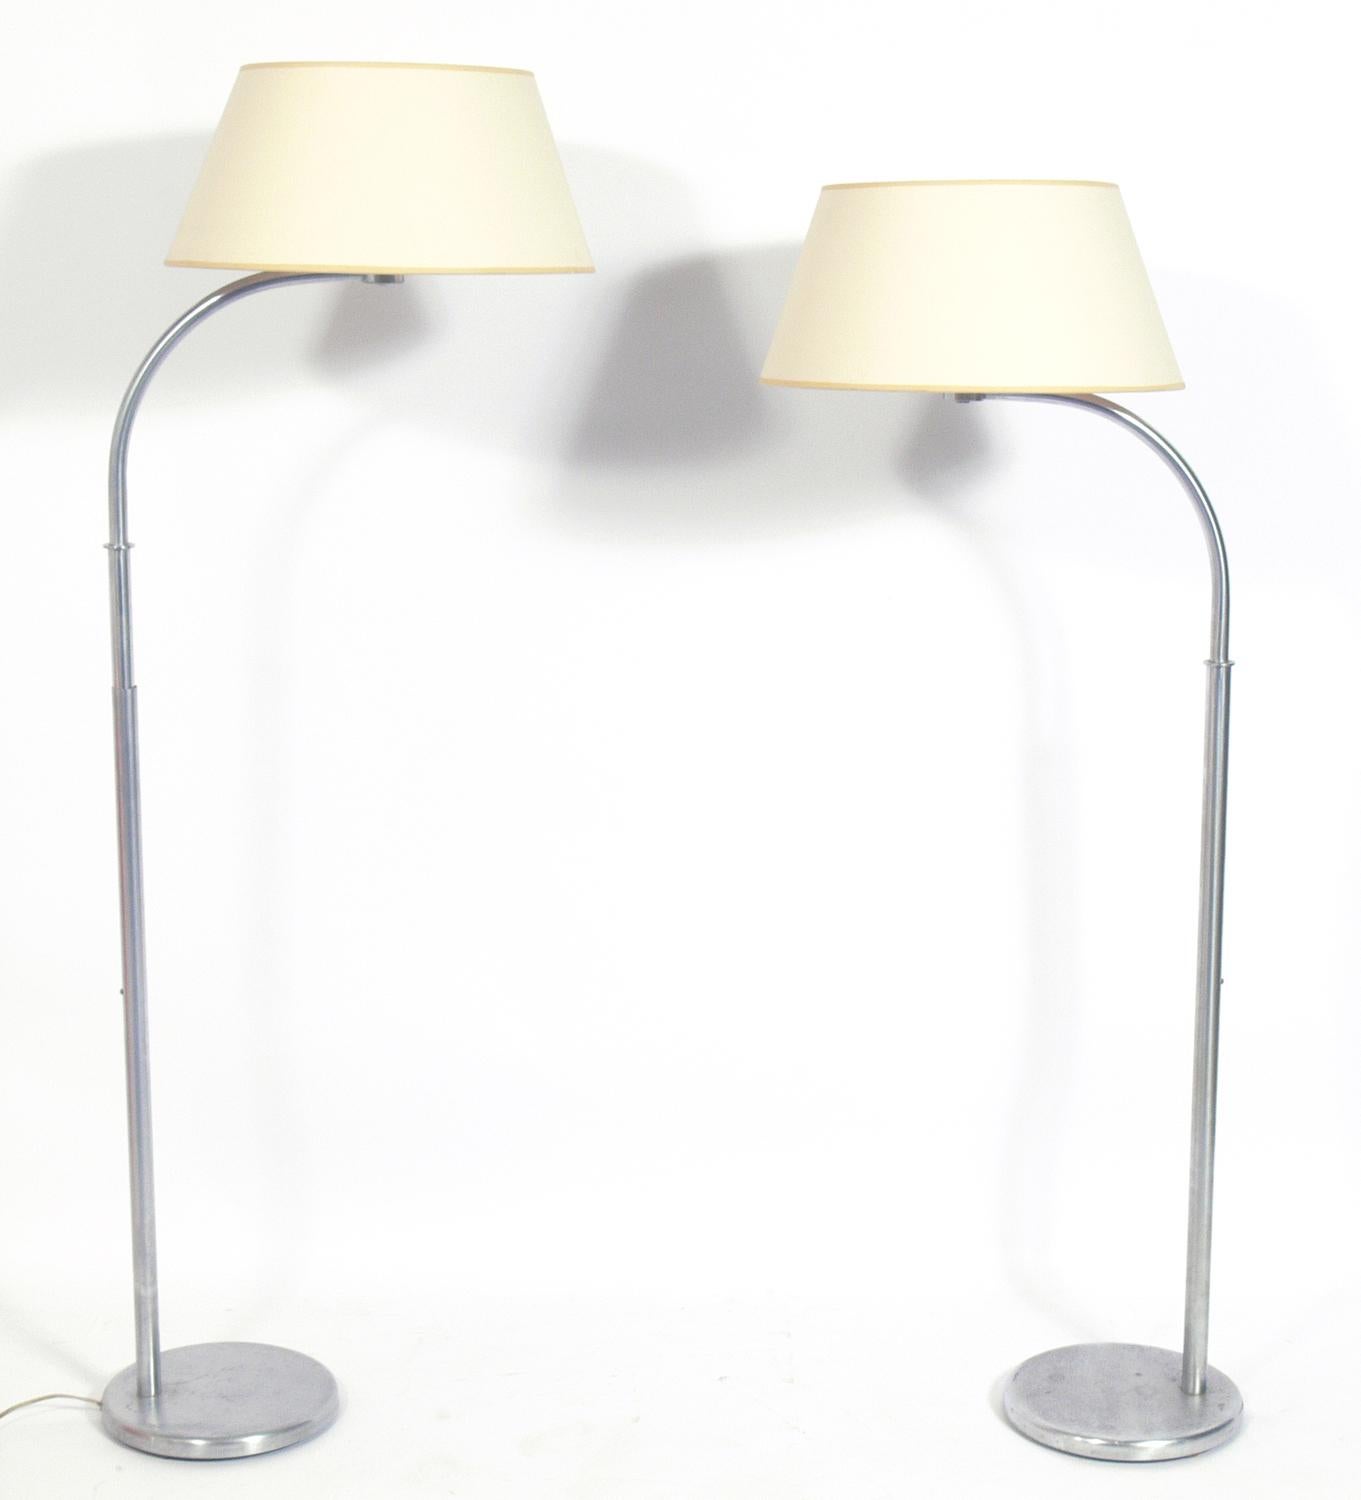 Paire de lampadaires Art déco précoce, conçus par Walter Von Nessen pour Nessen Studios, États-Unis, vers les années 1940. Ils coulissent vers le haut et vers le bas pour une hauteur réglable. Ils ont été recâblés et sont prêts à être utilisés.